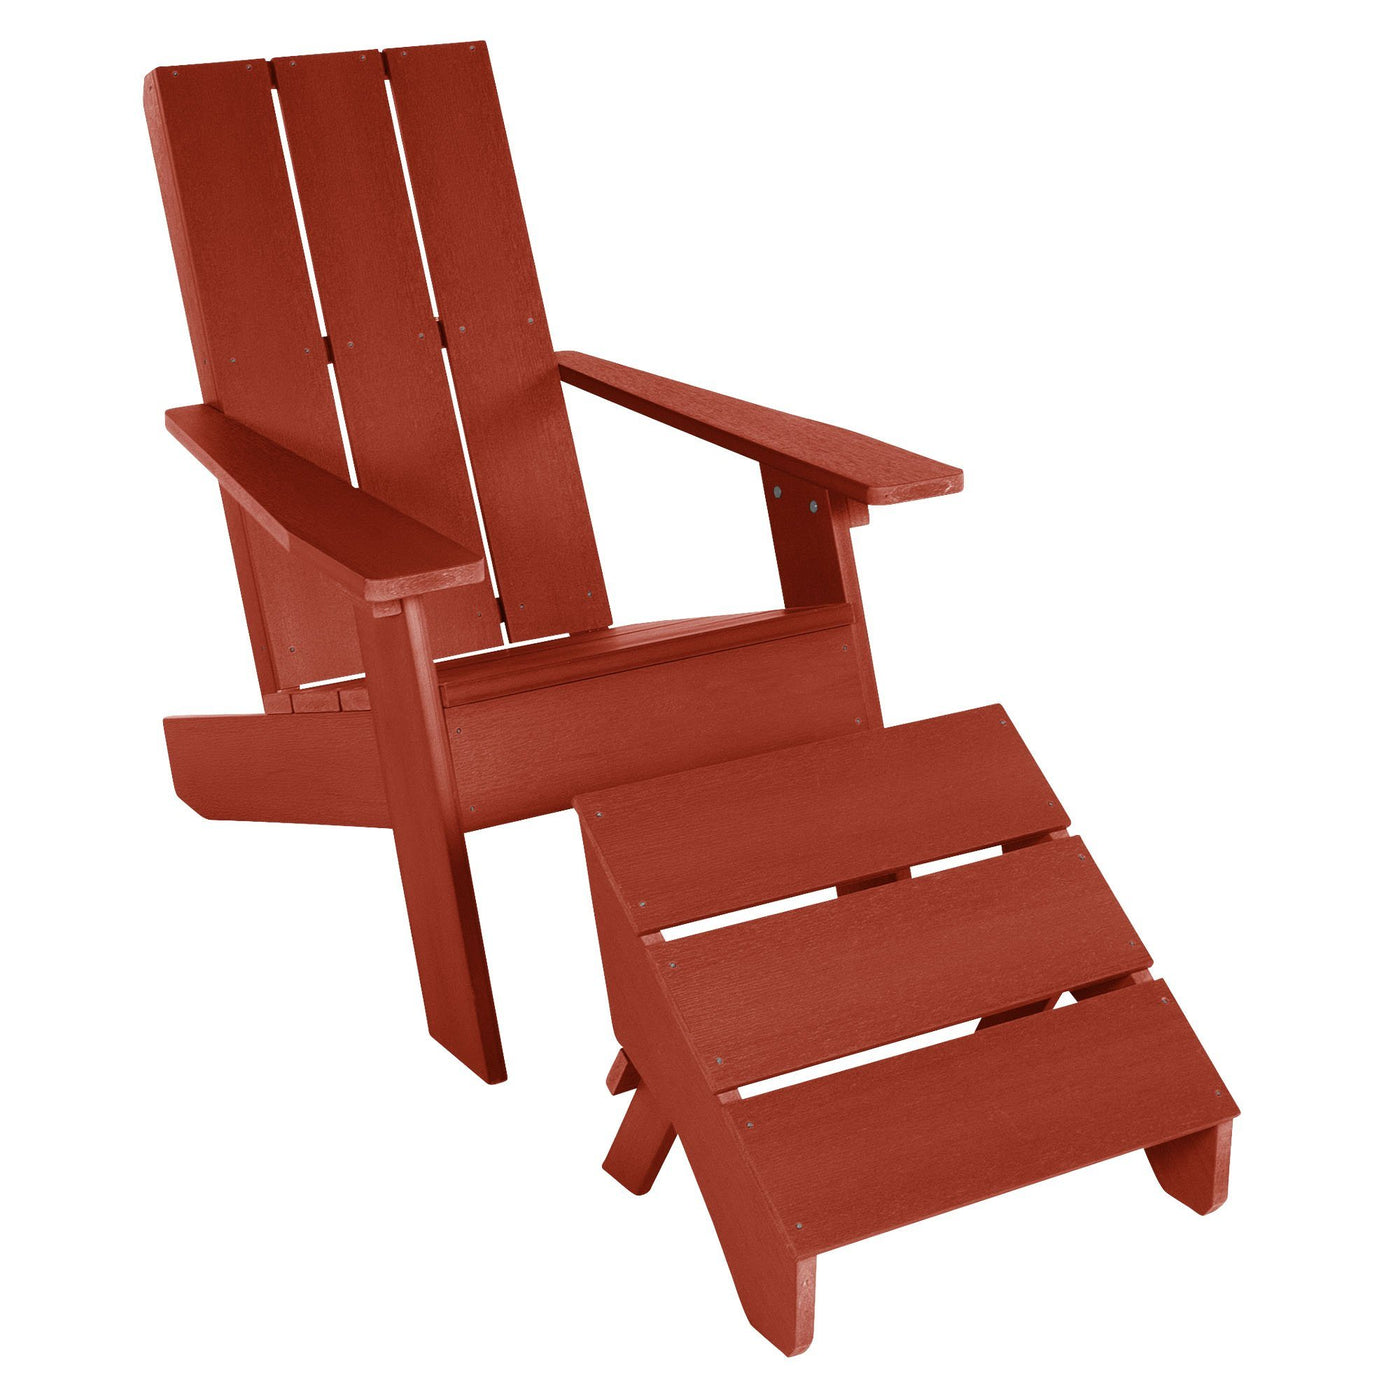 Barcelona Modern Adirondack Chair and Ottoman Highwood USA Rustic Red 